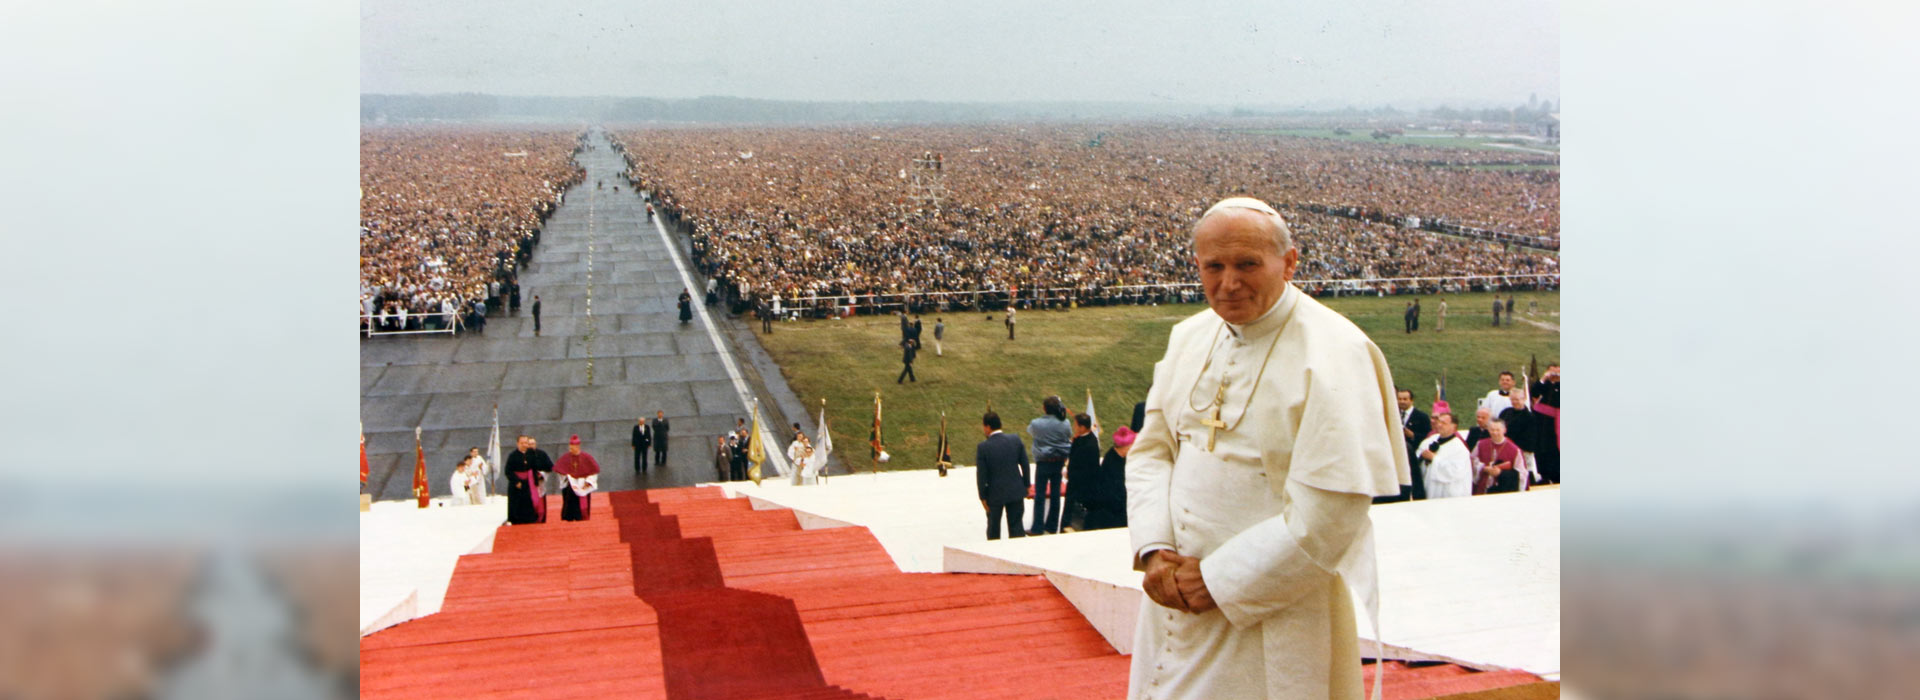 Wspomnienie liturgiczne św. Jana Pawła II